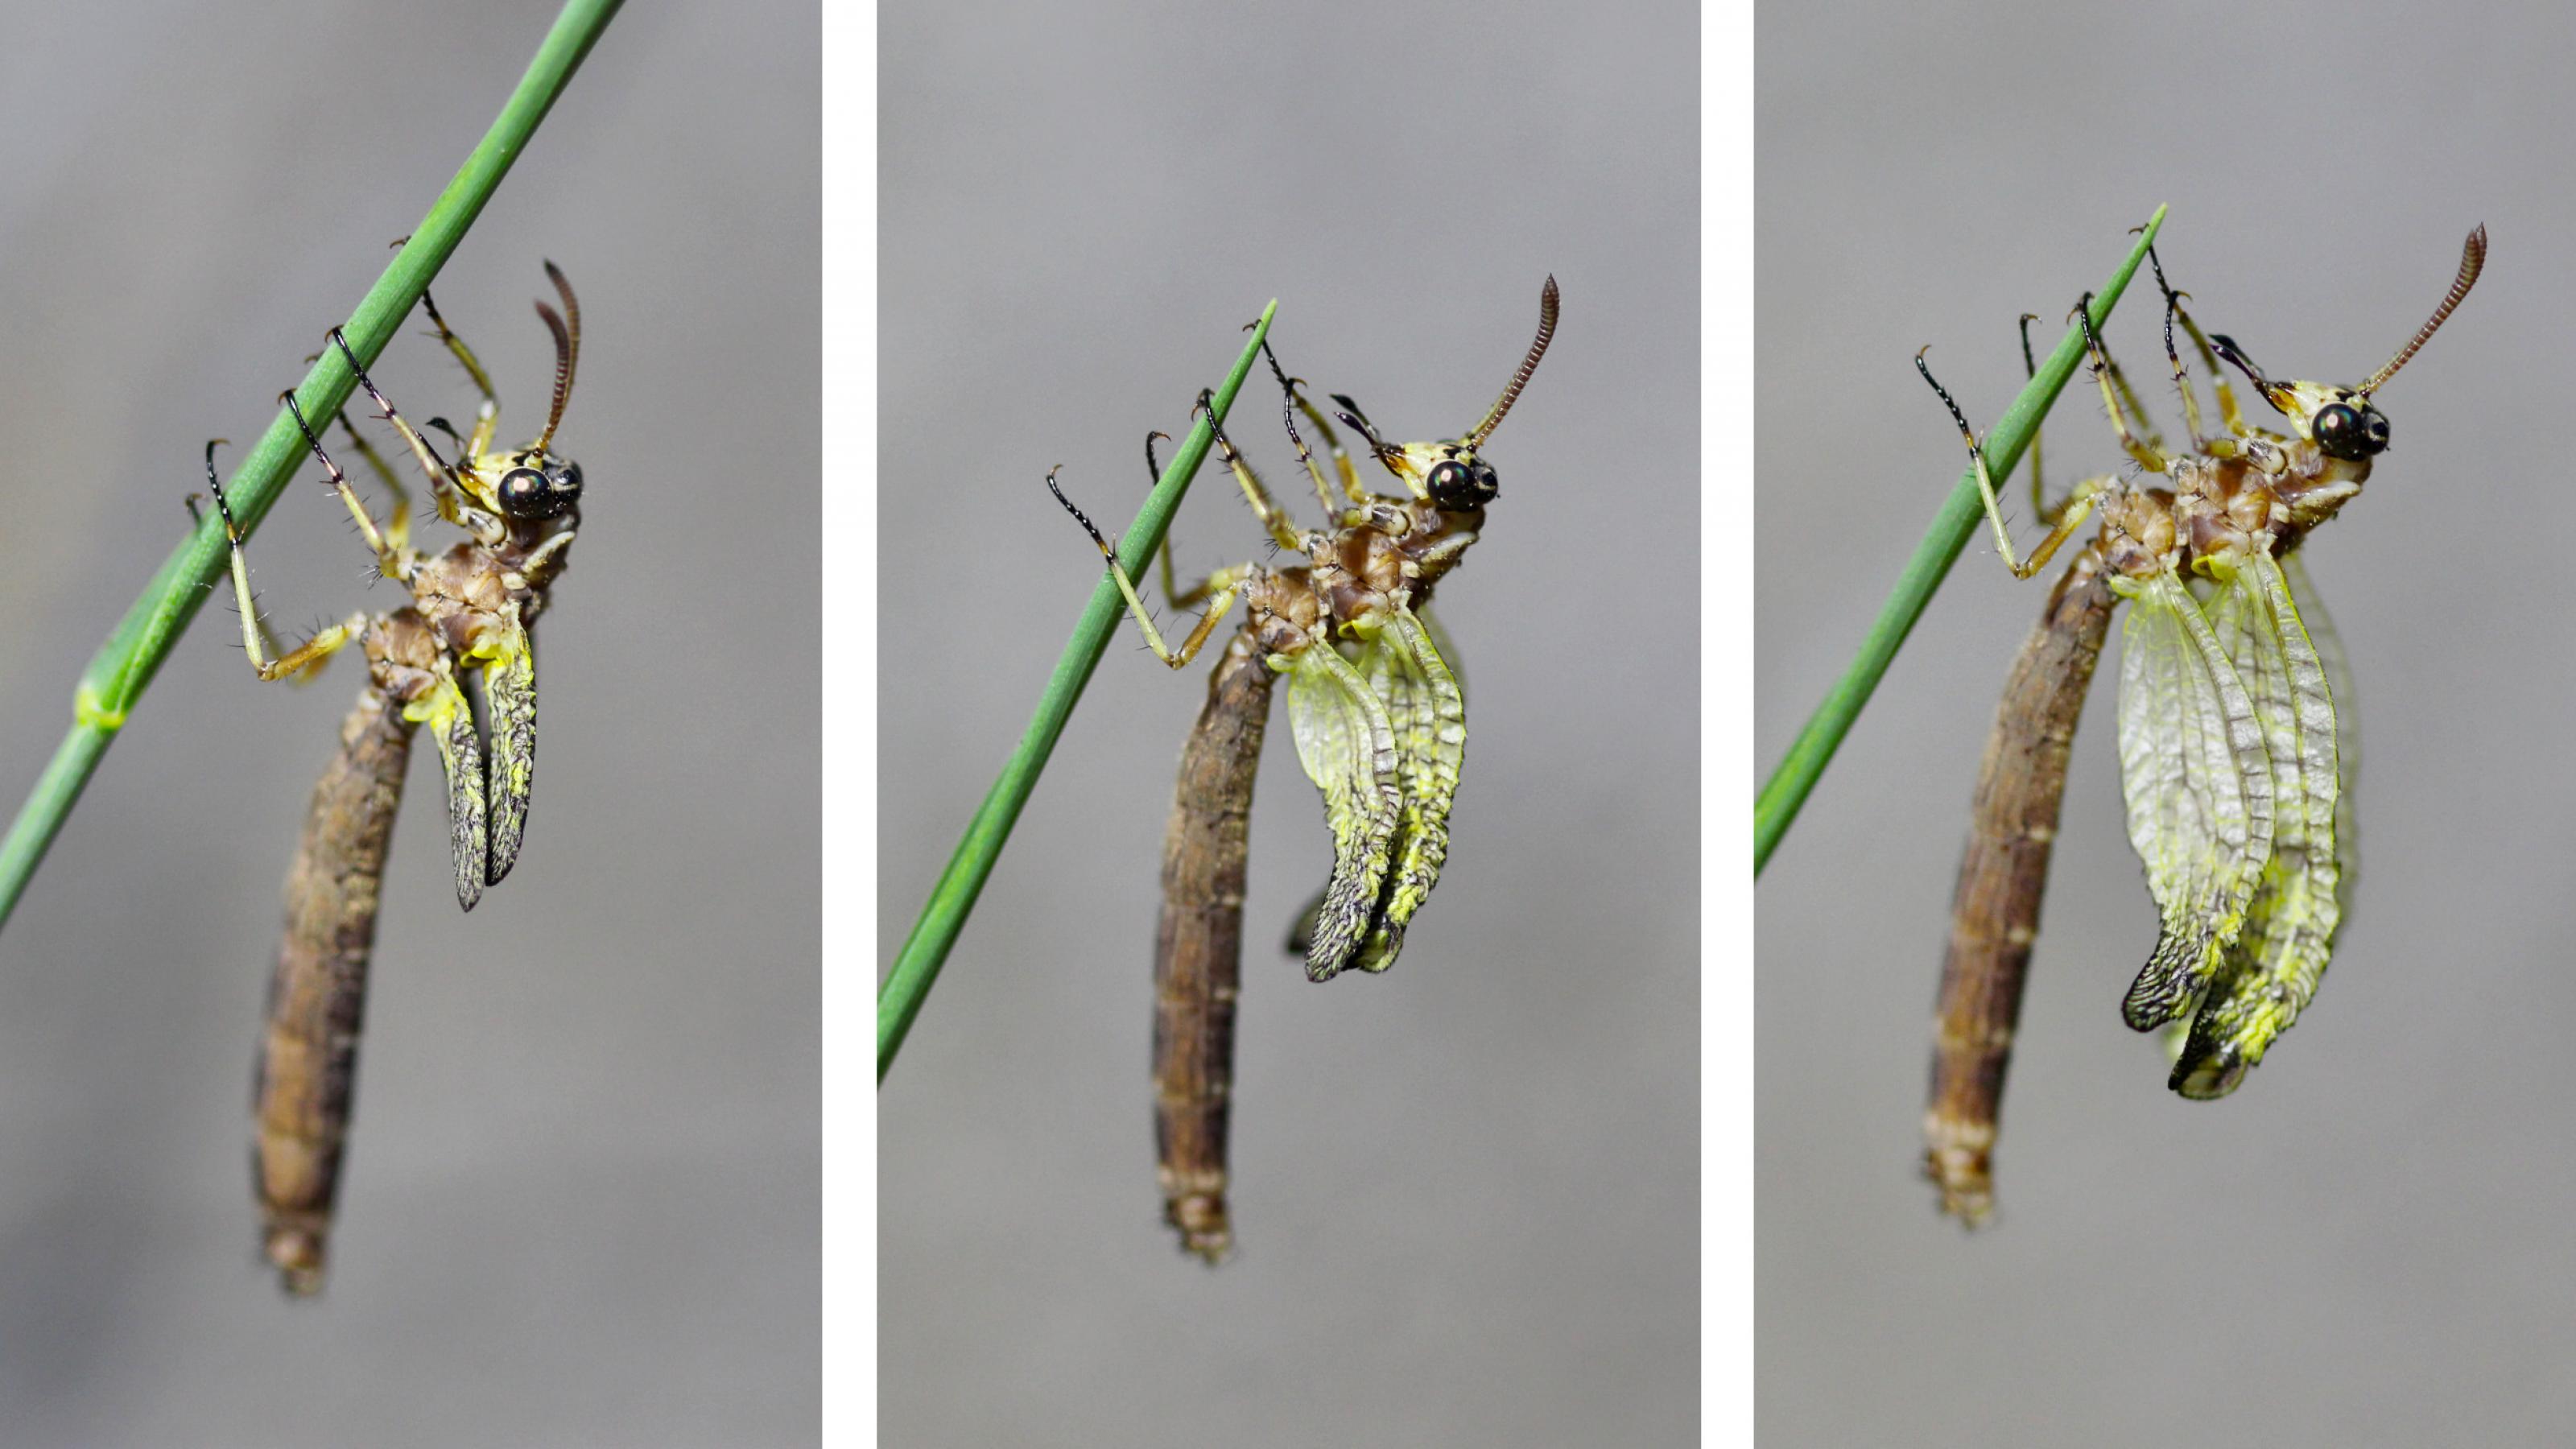 Ein bräunliches Insekt mit großen, dunklen Augen klammert sich mit sechs Beinen an einen grünen Grashalm.Von links nach rechts sind drei Phasen abgebildet, in denen die Flügel immer ein Stück größer werden.